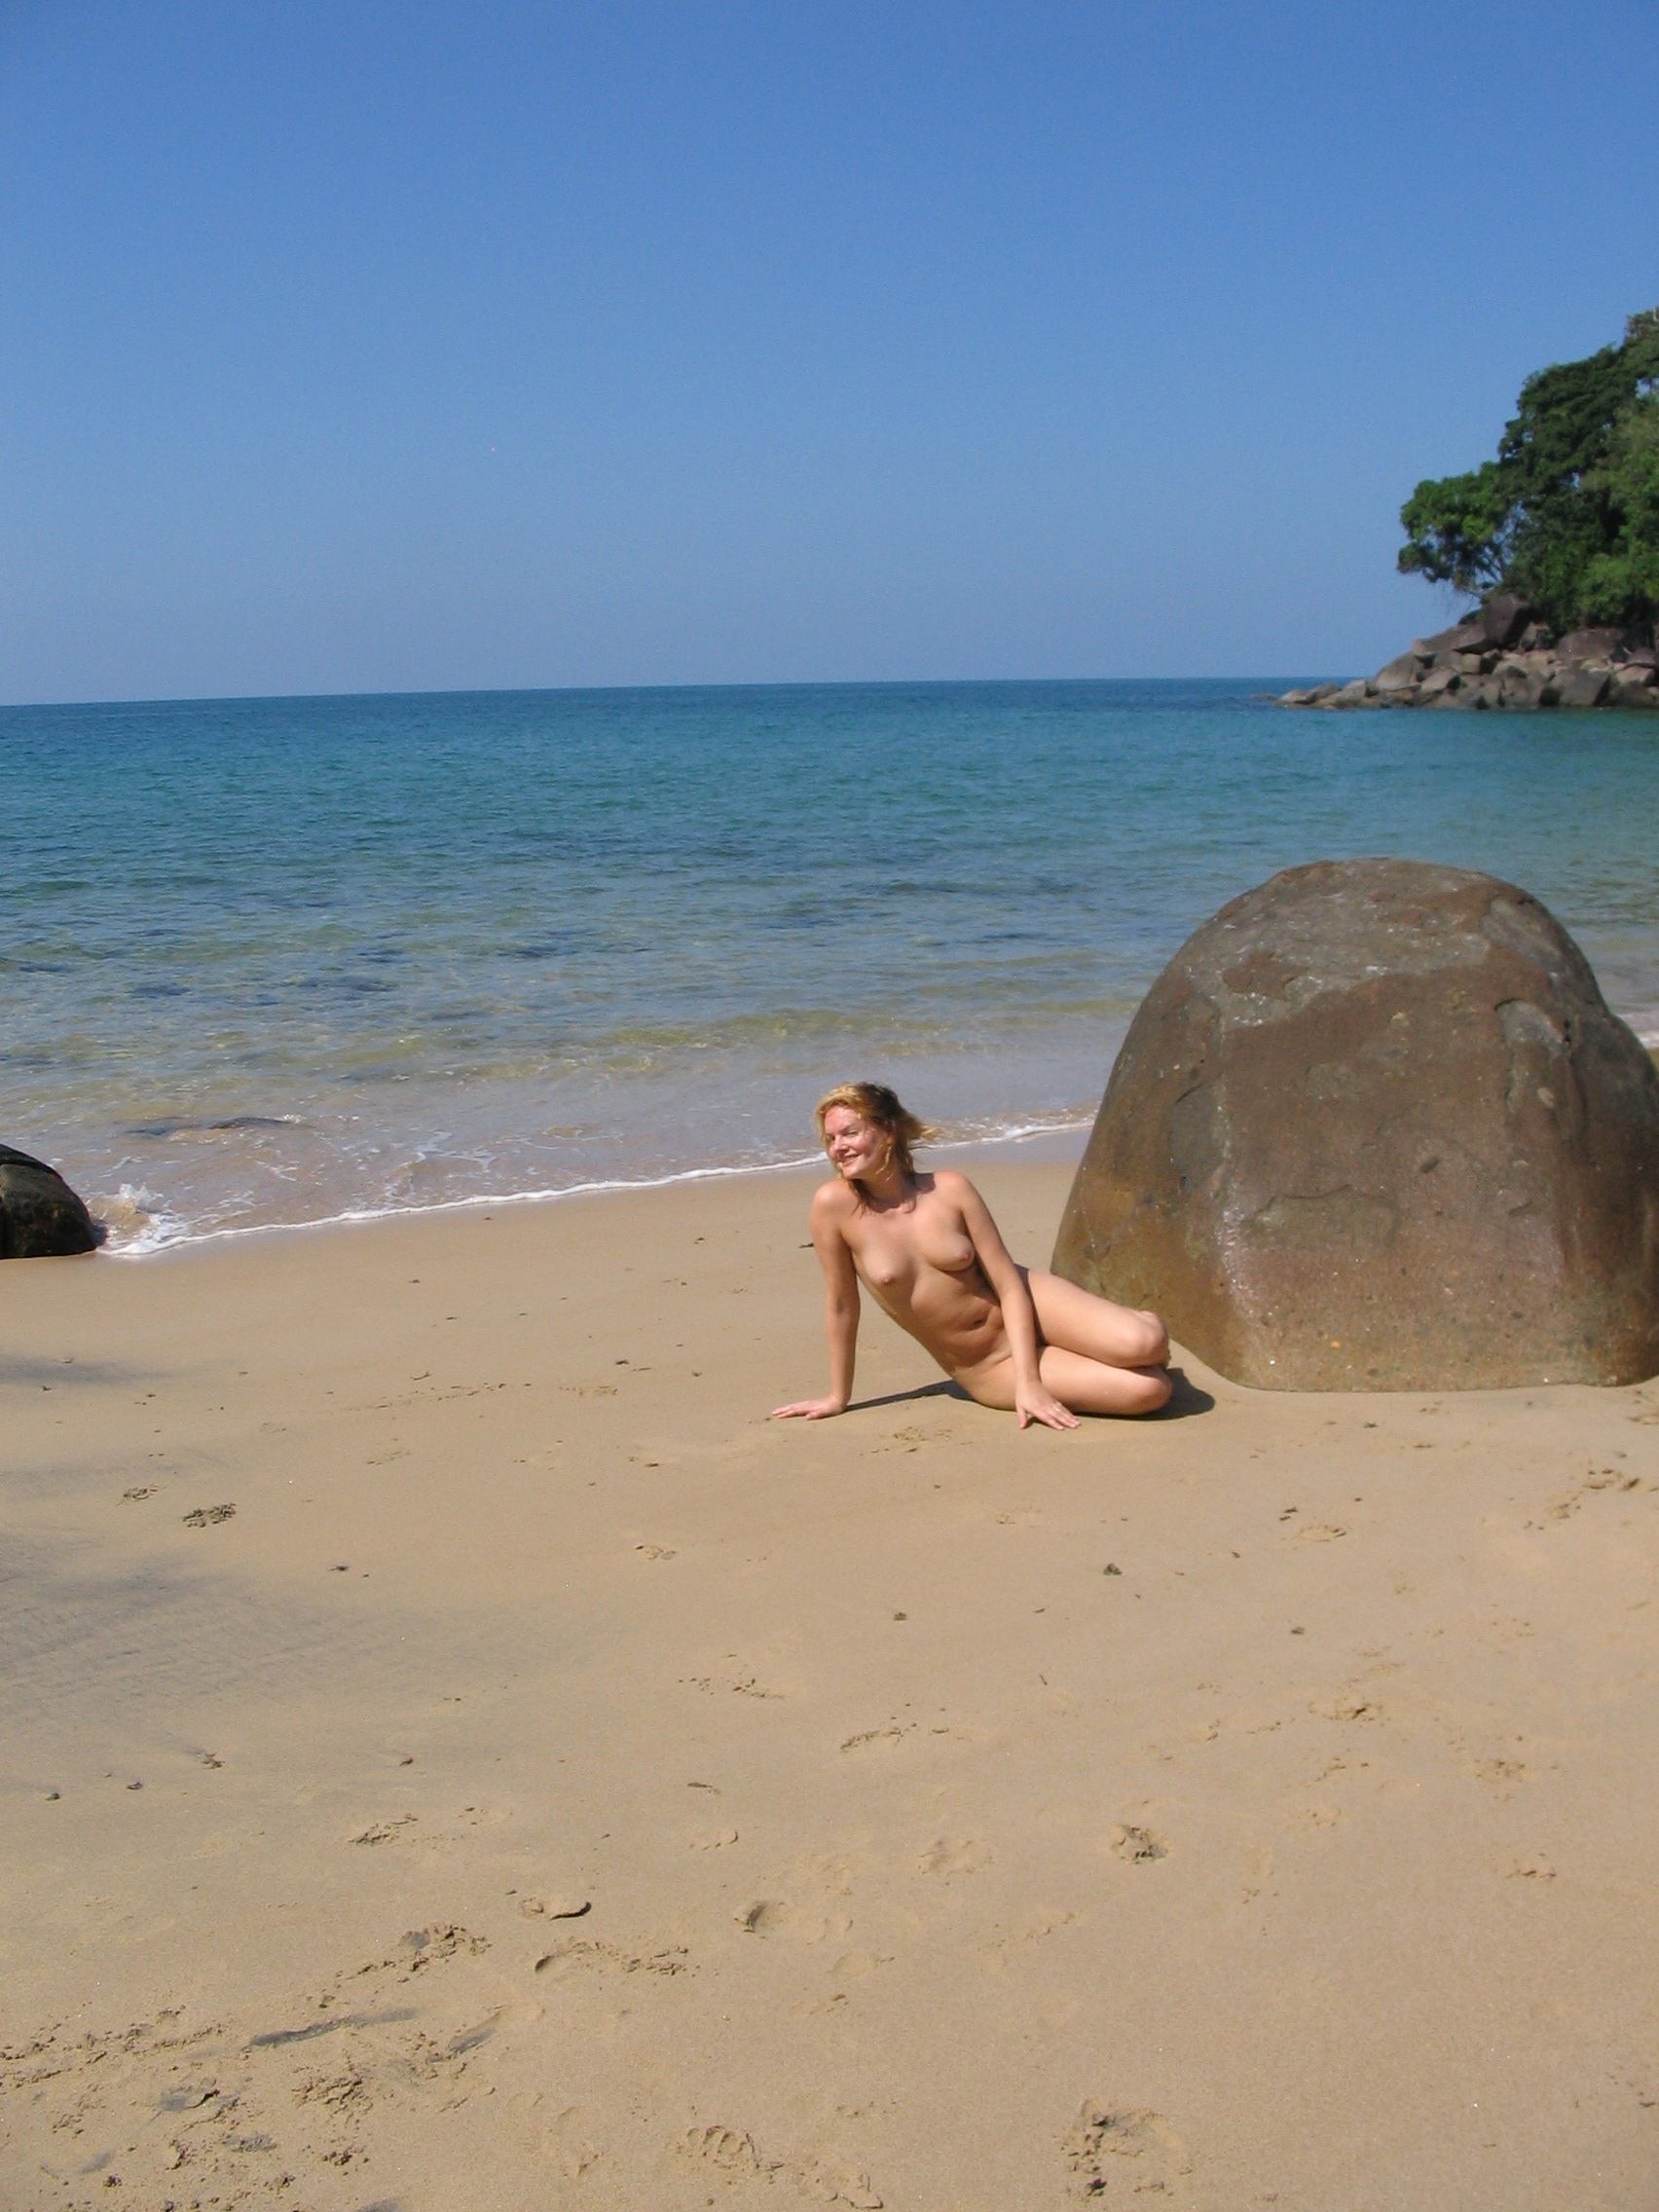 Nude Amateur Photos - Danish Babe On The Beach77